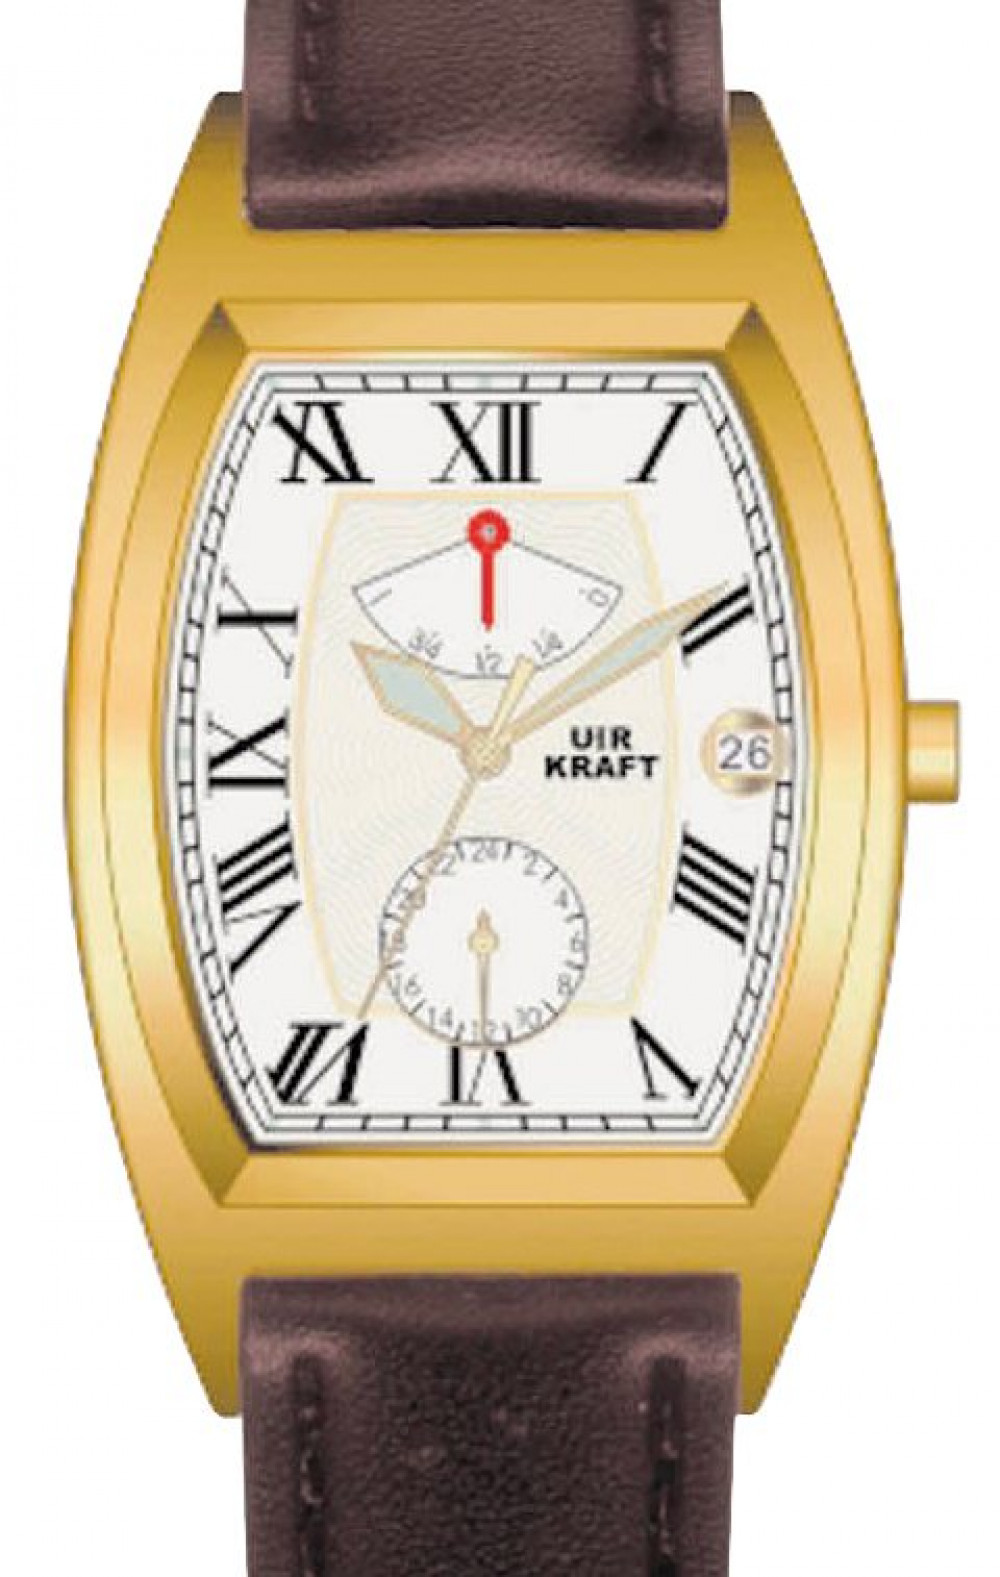 Zegarek firmy Uhr-Kraft, model E-Master